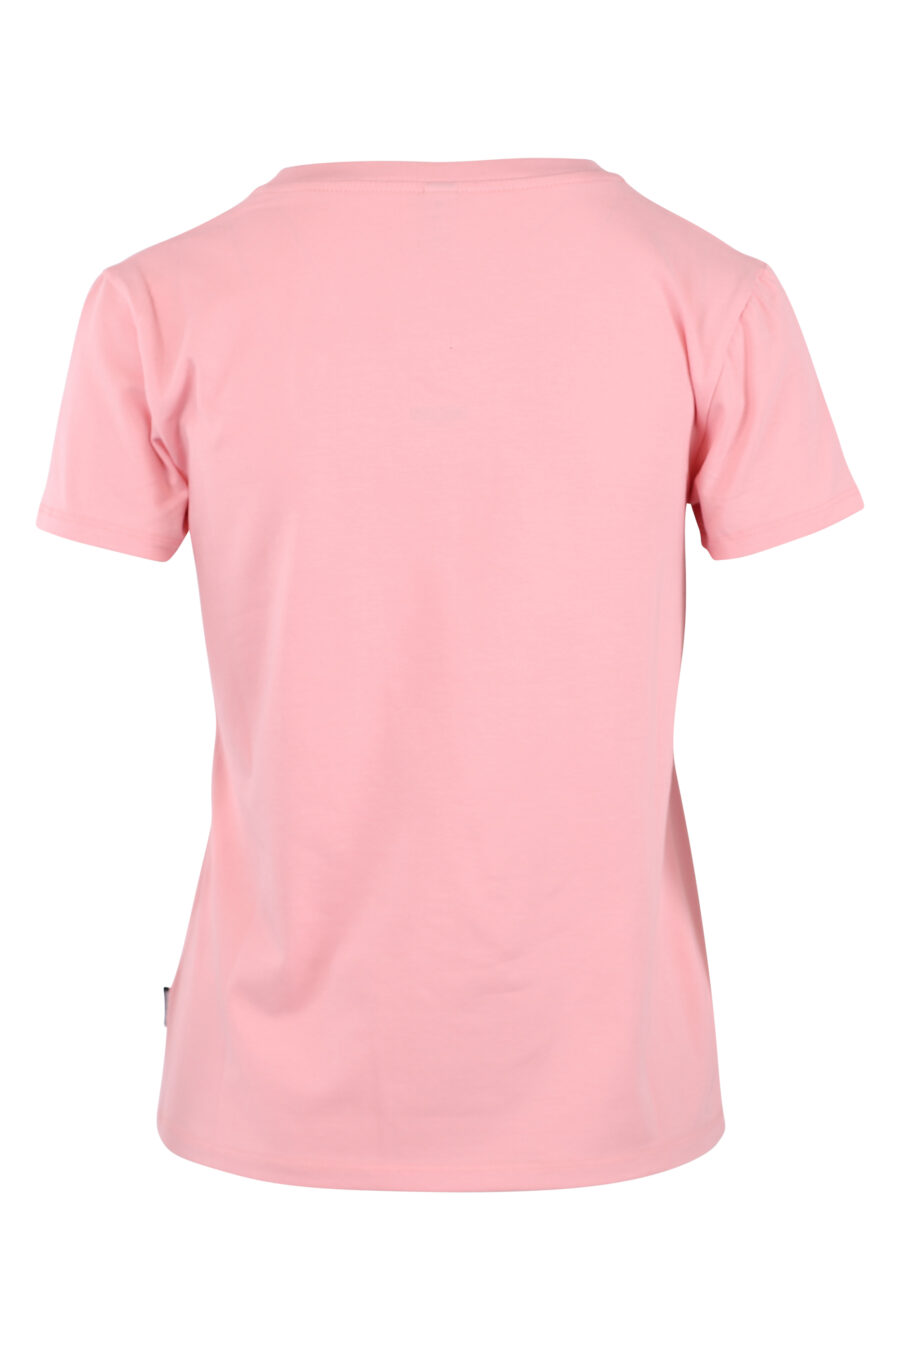 T-shirt cor-de-rosa com o logótipo de um pequeno urso - IMG 6238